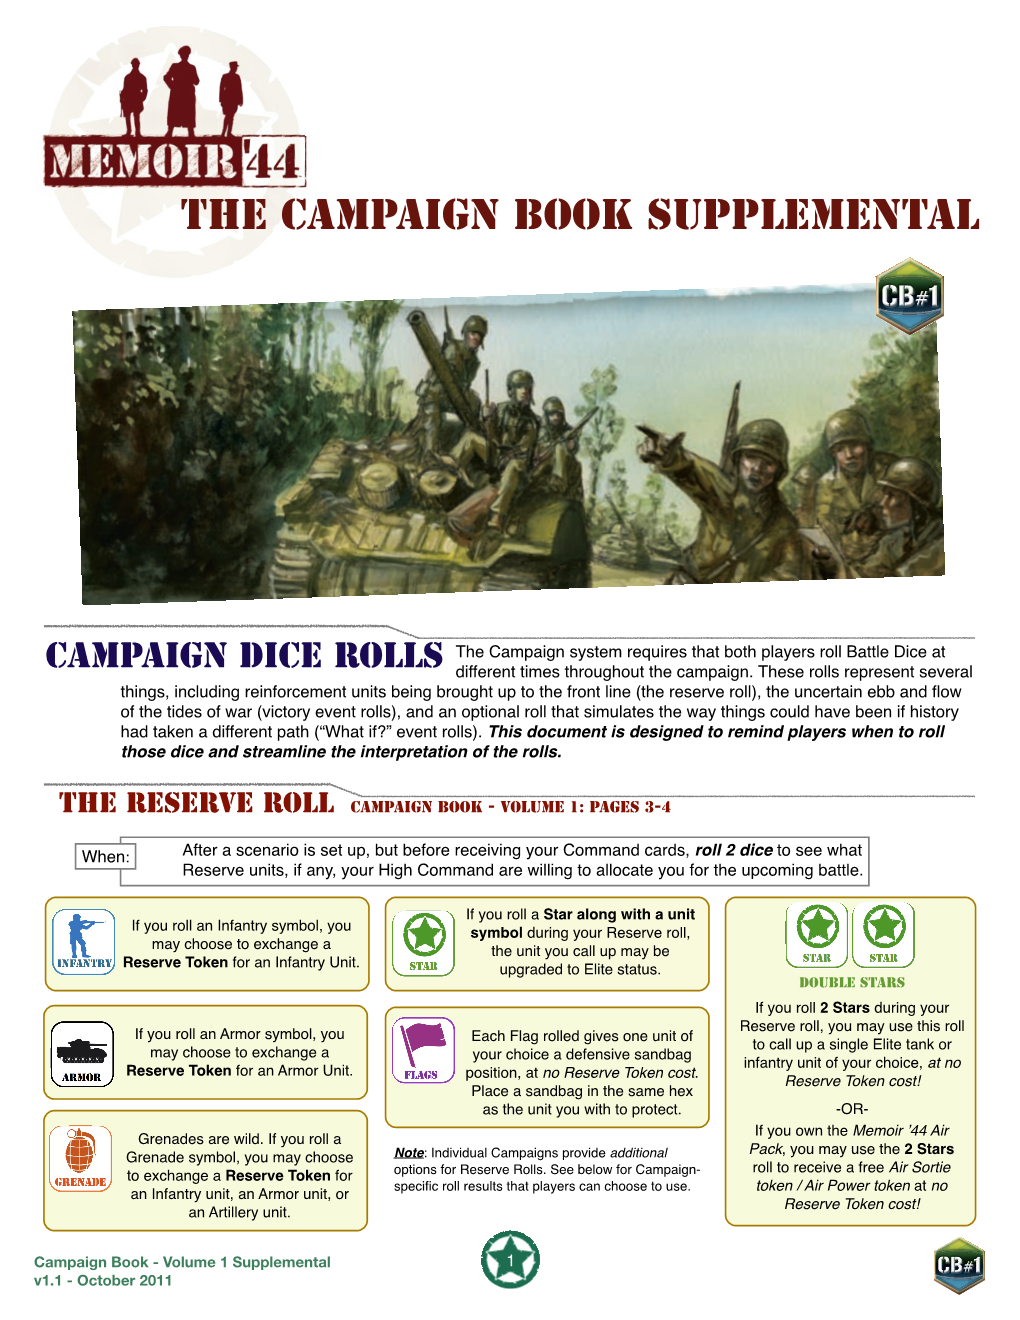 Campaign Book 1 Supplemental V1.1